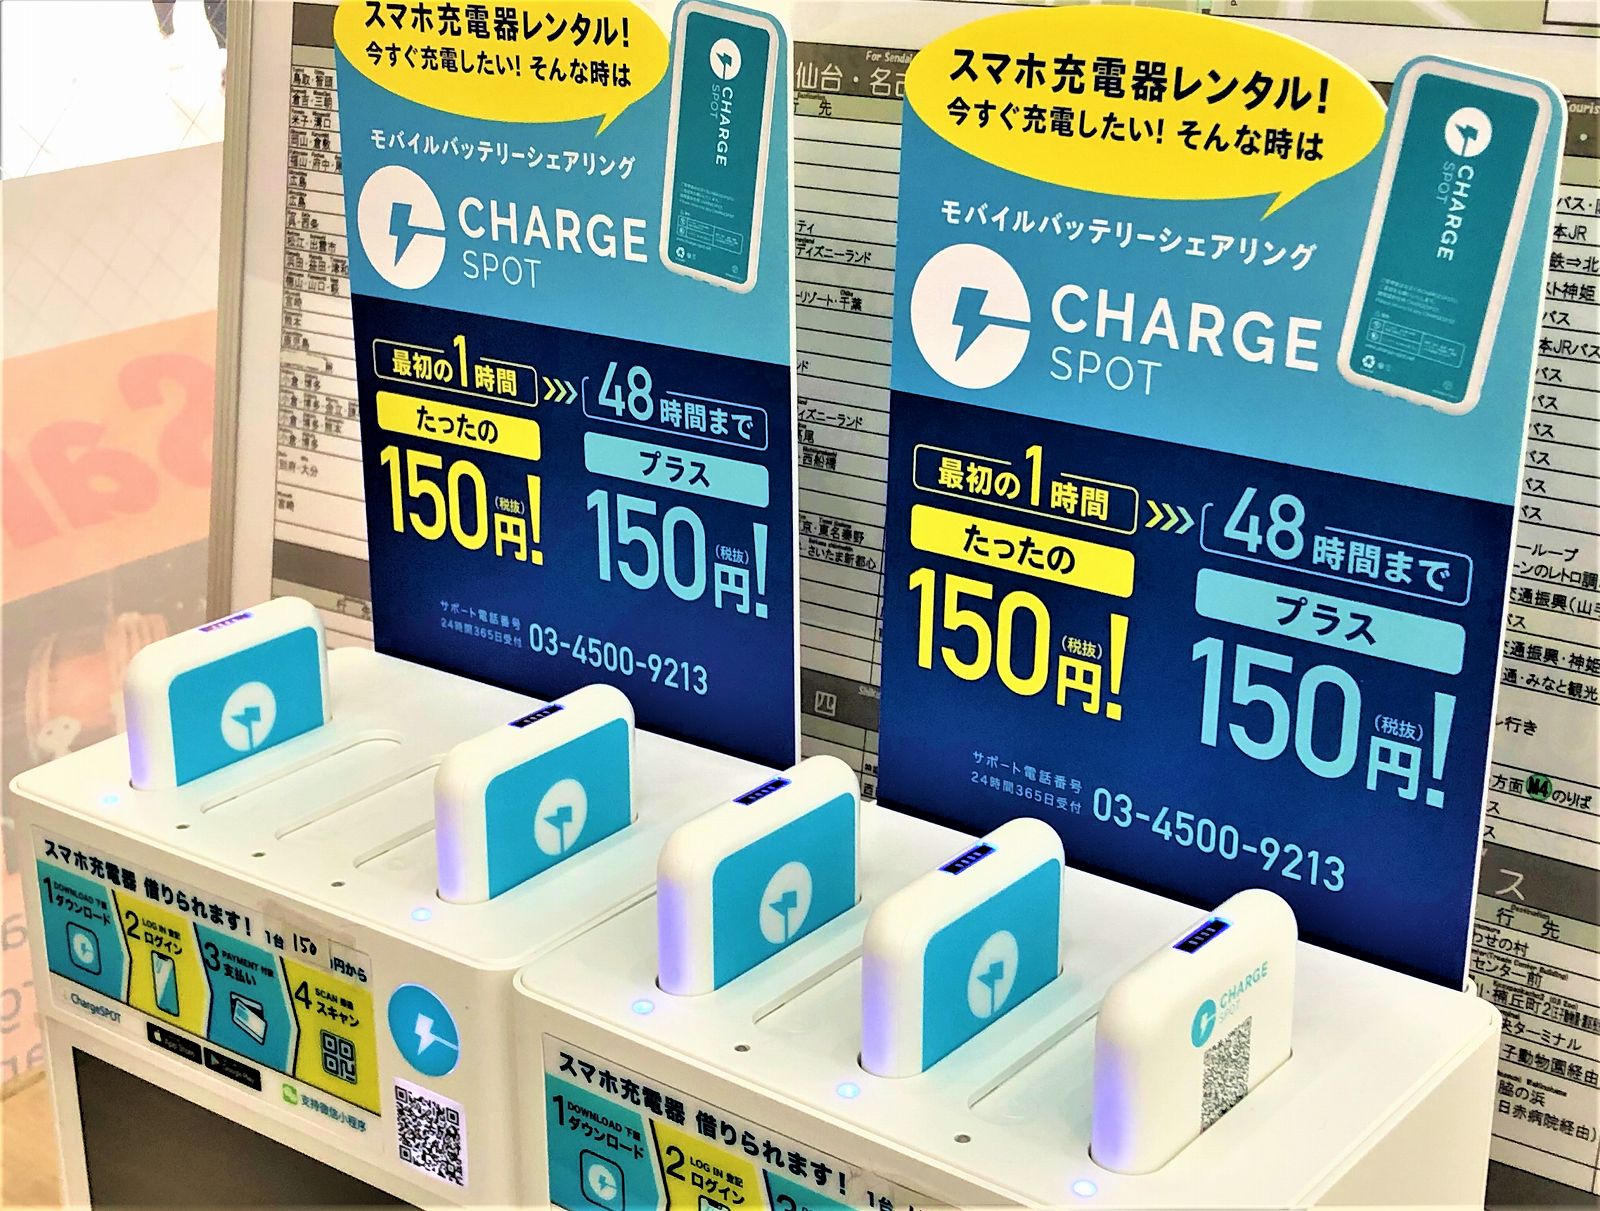 スマホを充電したい！モバイルバッテリーシェアリング「Charge SPOT」があるって知っとう！？ #ChargeSPOT #スマホ充電器レンタル  #モバイルバッテリーシェアリング #神戸市 #神戸観光 | 東灘ジャーナル